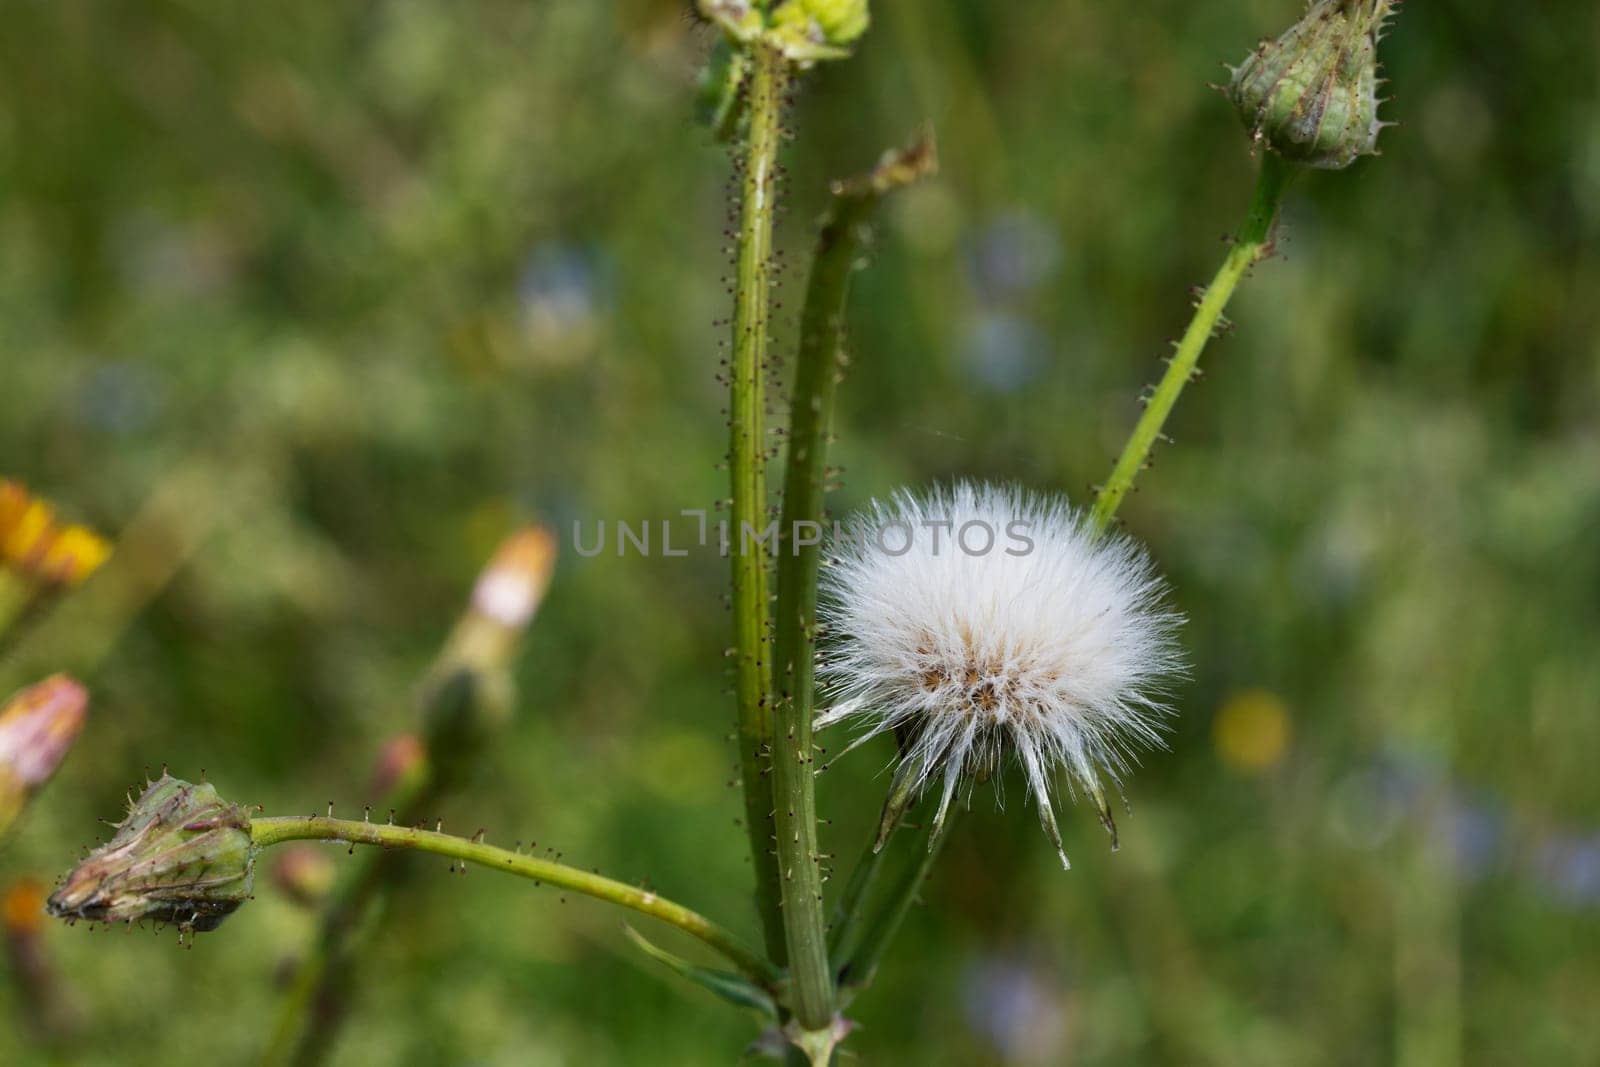 Seedhead of sonchus flower by victimewalker